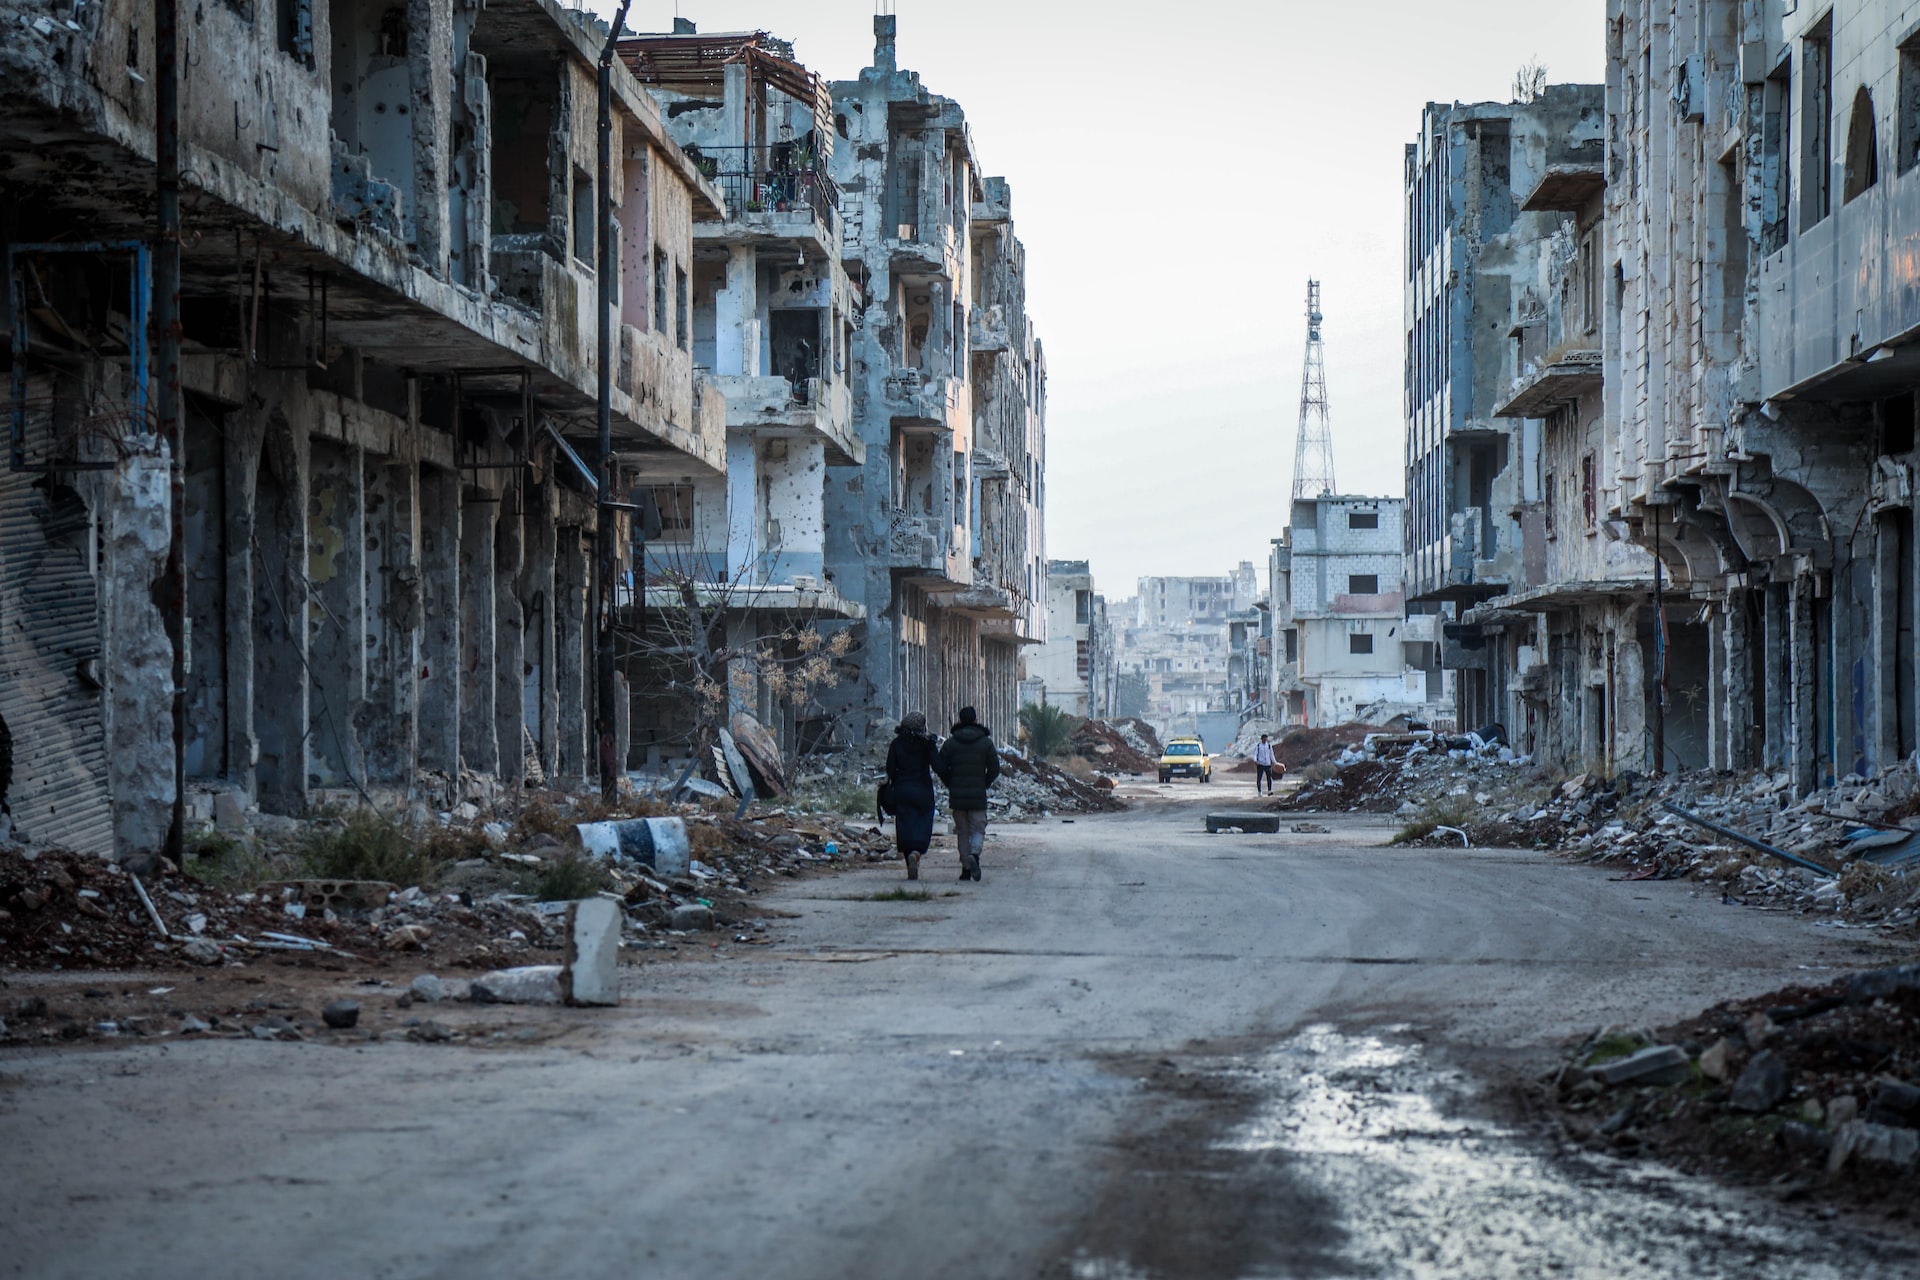 Iamge of Syrian War streetscape courtesy of Mahmoud Sulaiman on Unsplash